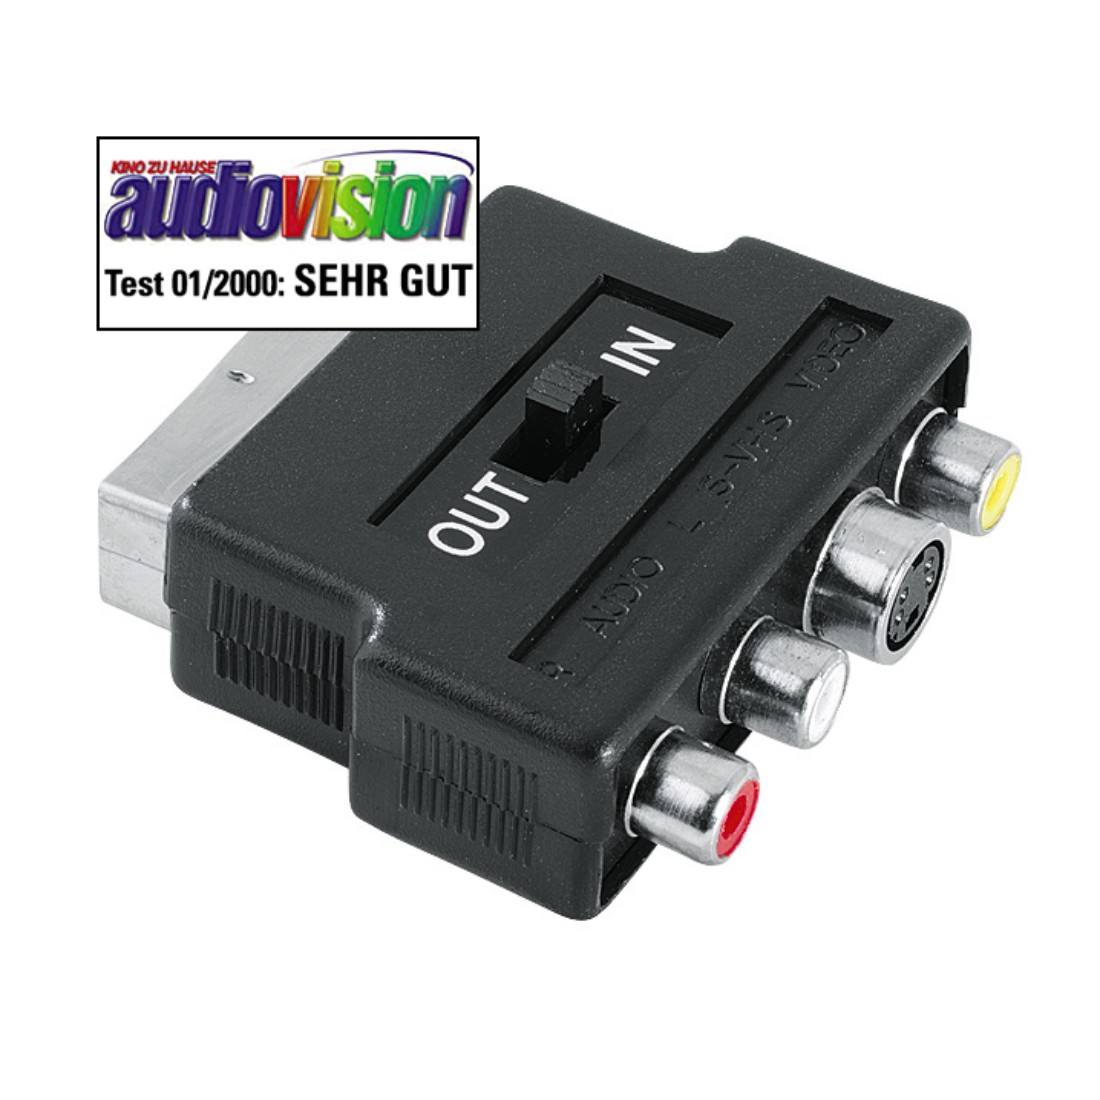 Audio-/Video-Adapter Scart-stecker mit in/out umschalter 3x cinch 